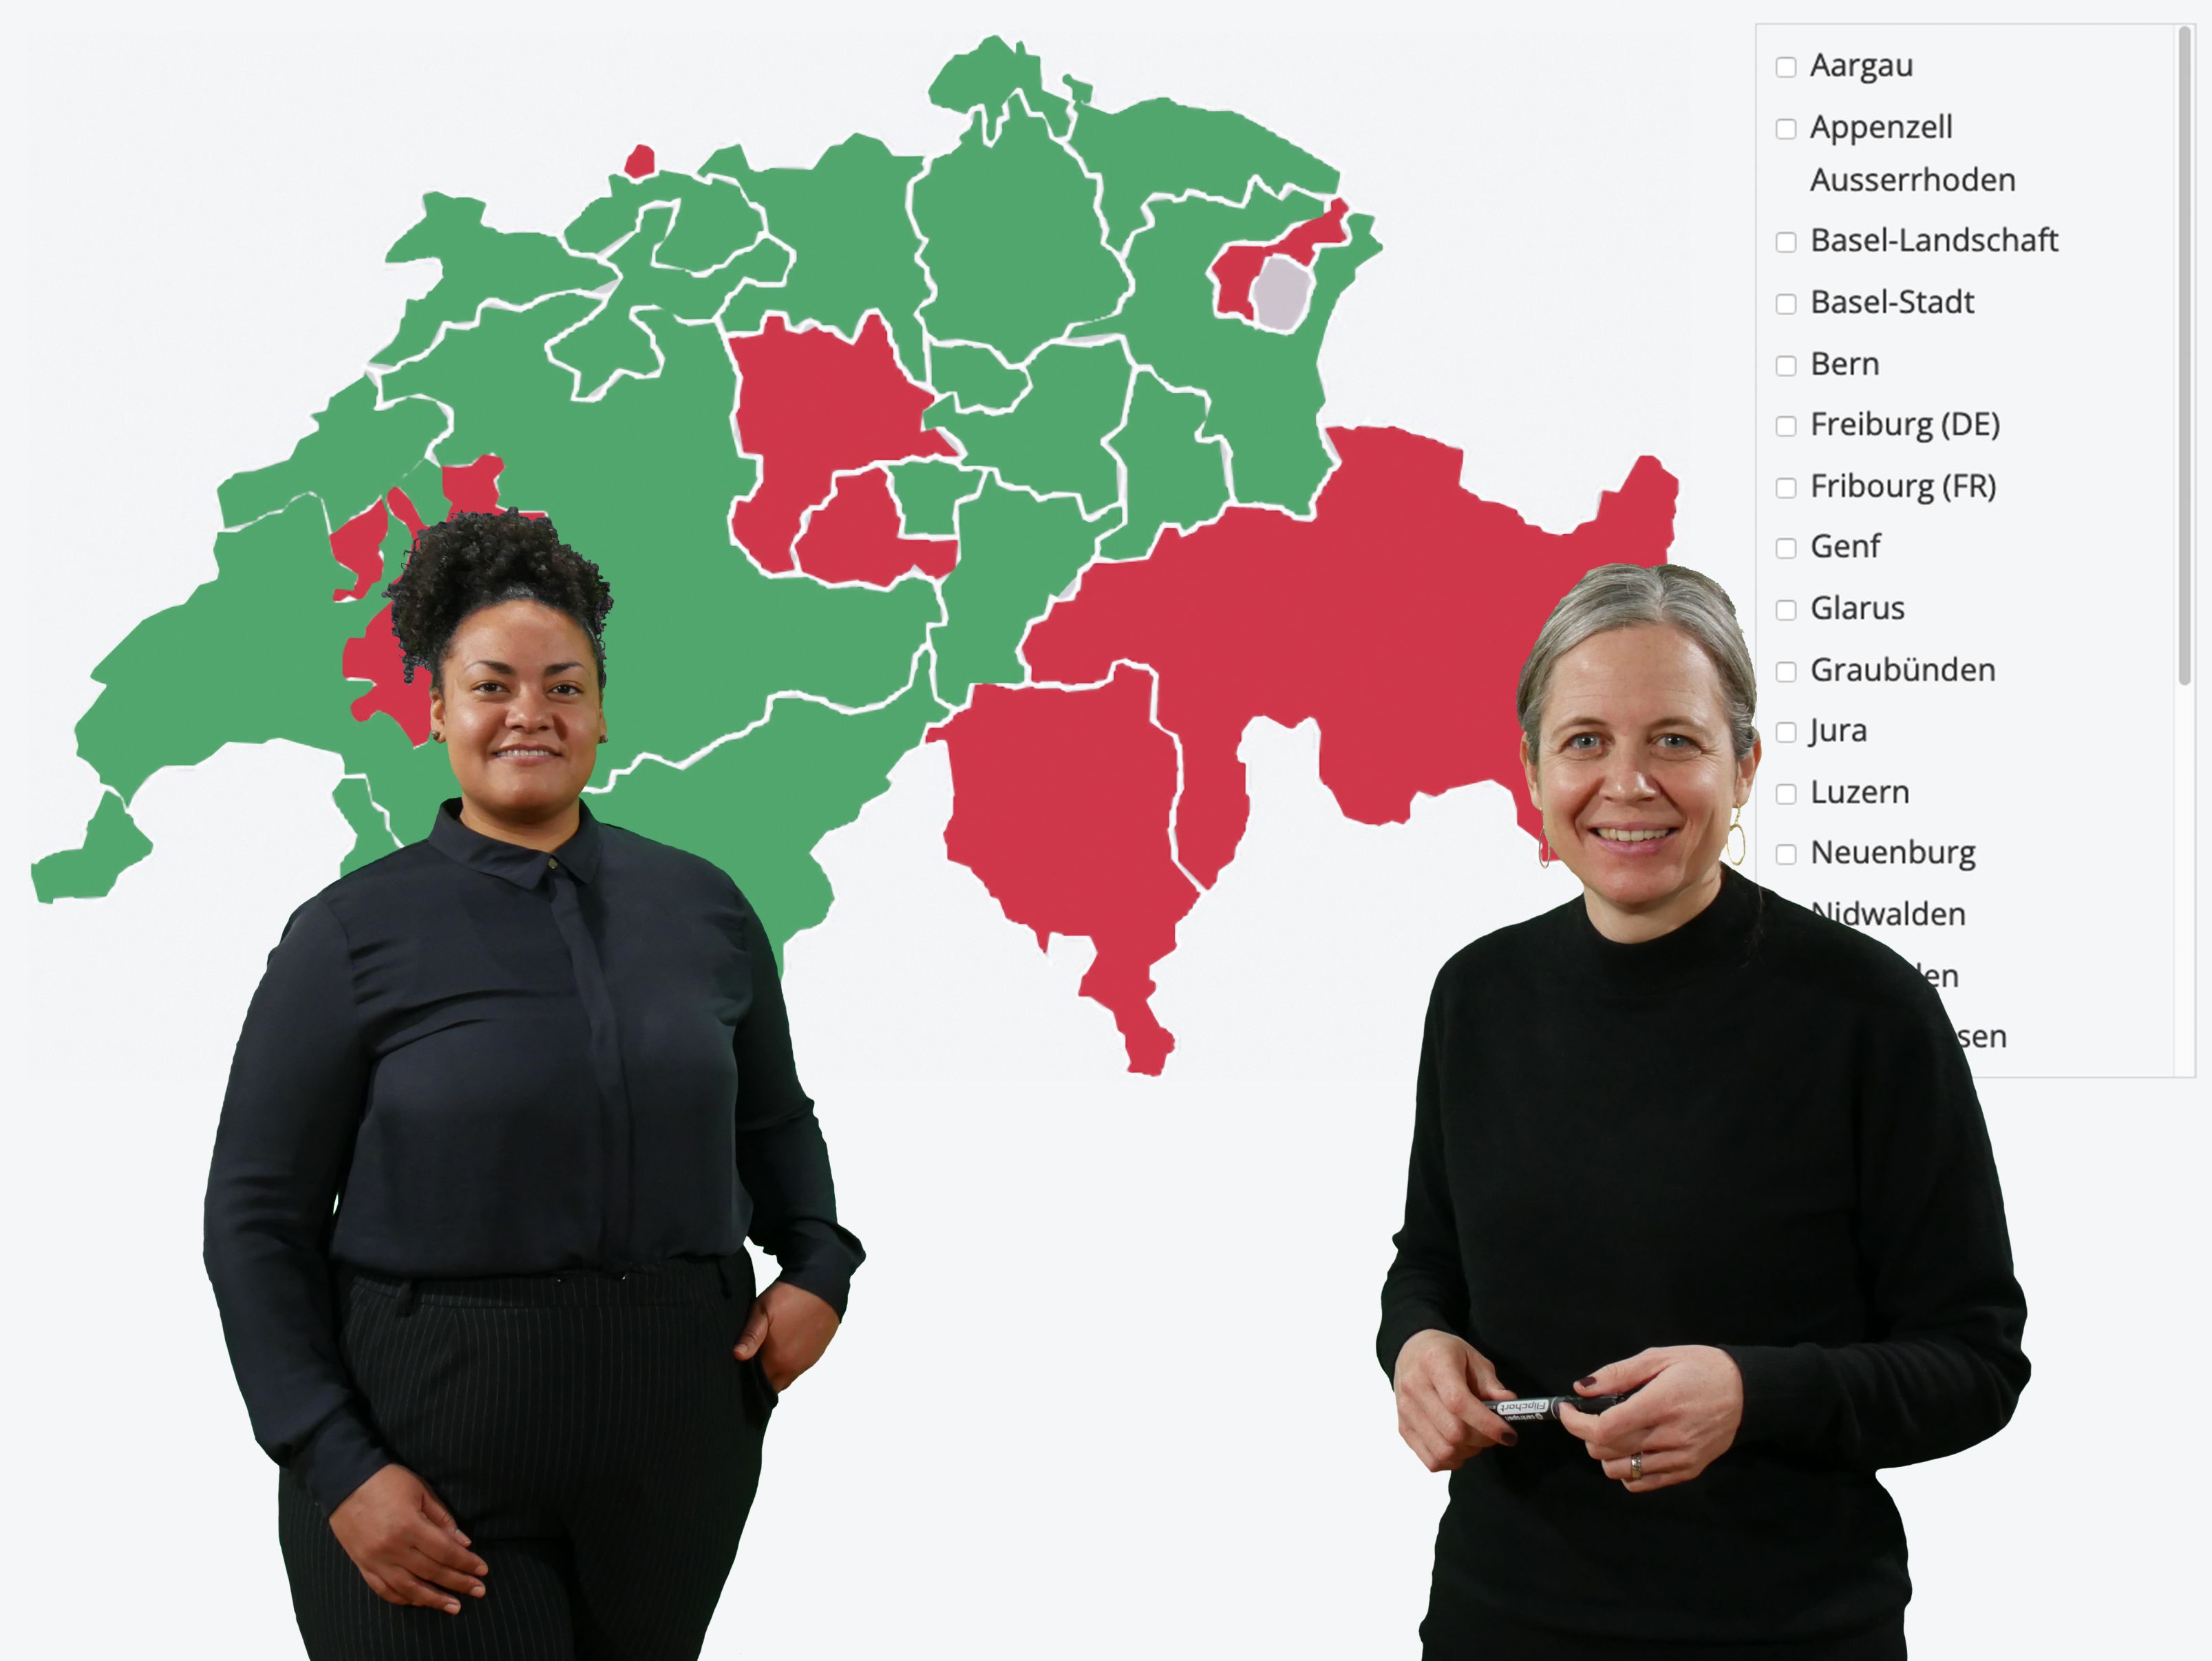 Description de l’image : les deux femmes portent des vêtements sombres et se tiennent devant une présentation qui affiche la carte de Suisse interactive InSeMa. Sur cette carte, quelques cantons suisses sont en rouge et les autres en vert.